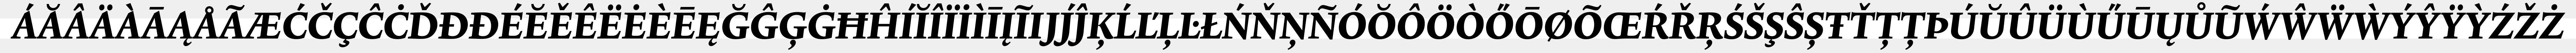 Lexicon No1 Italic E sample